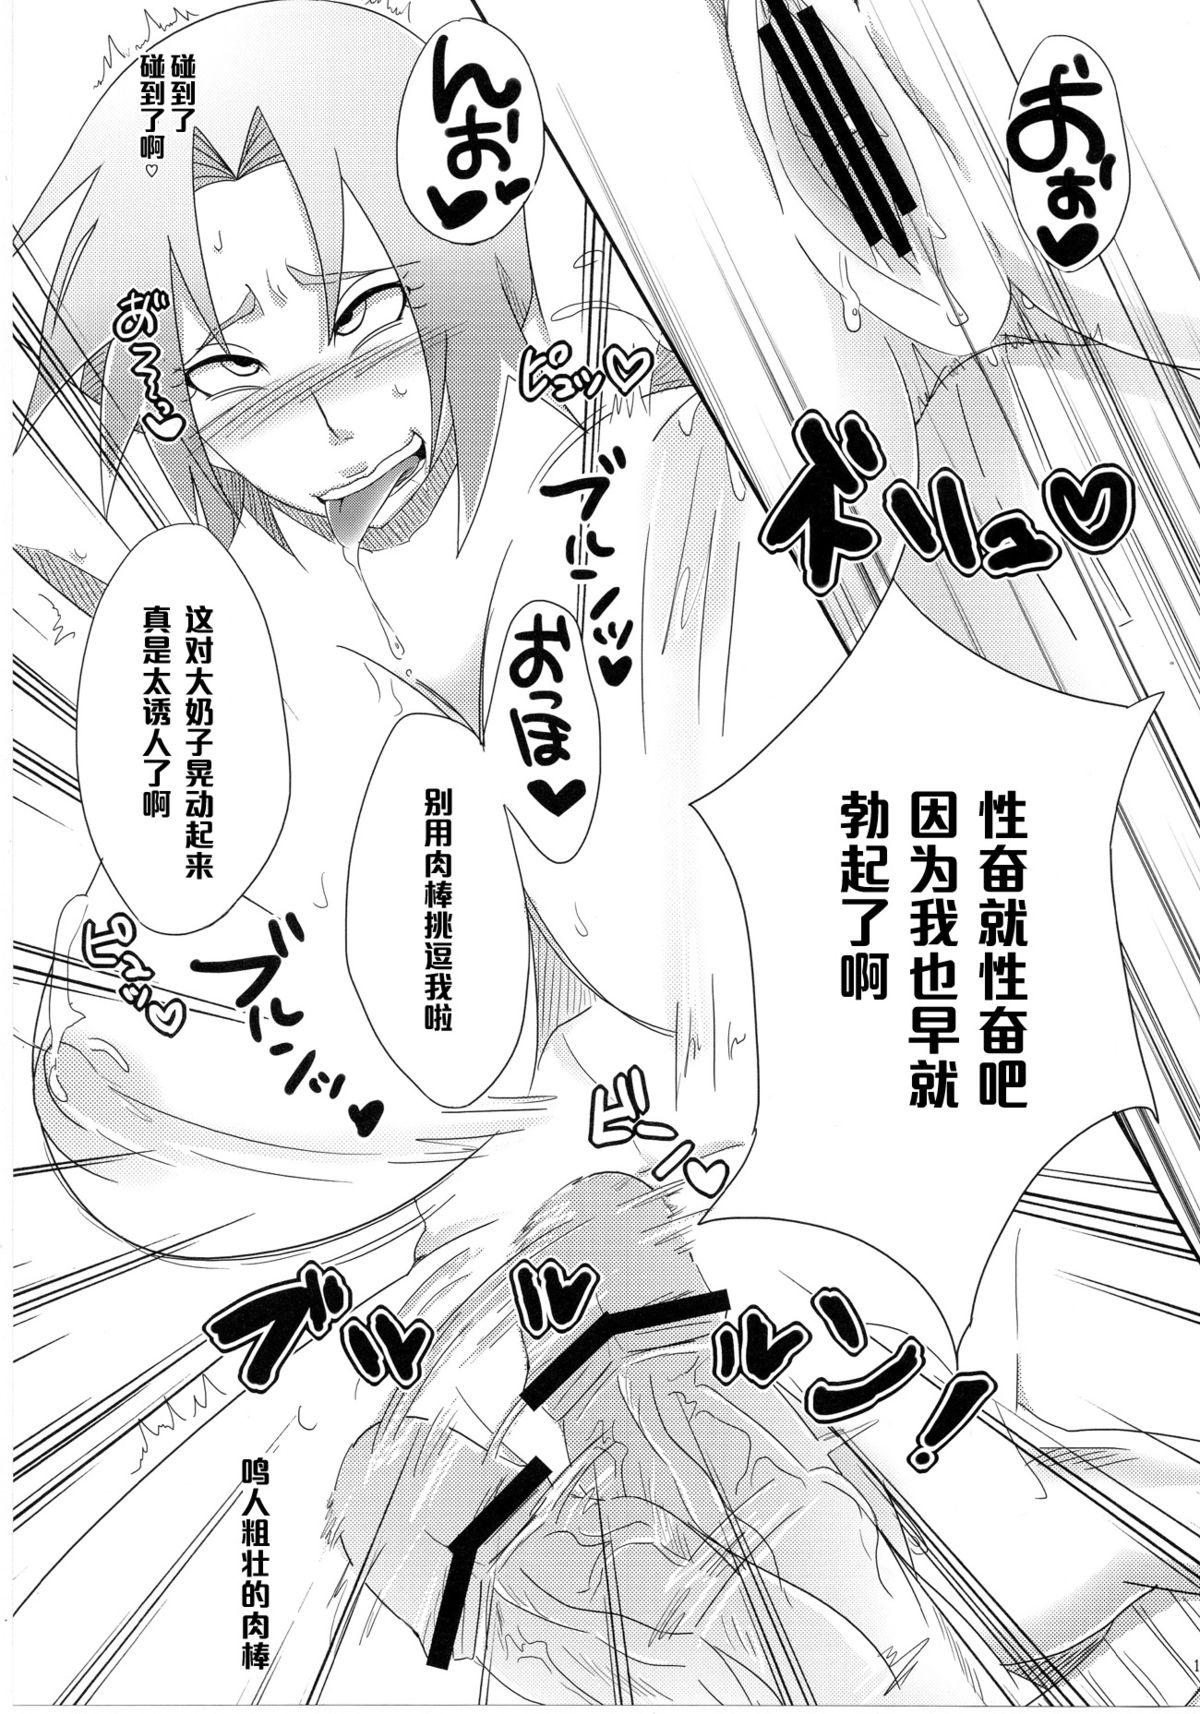 Soloboy Sato Ichiban no! - Naruto Mature Woman - Page 10